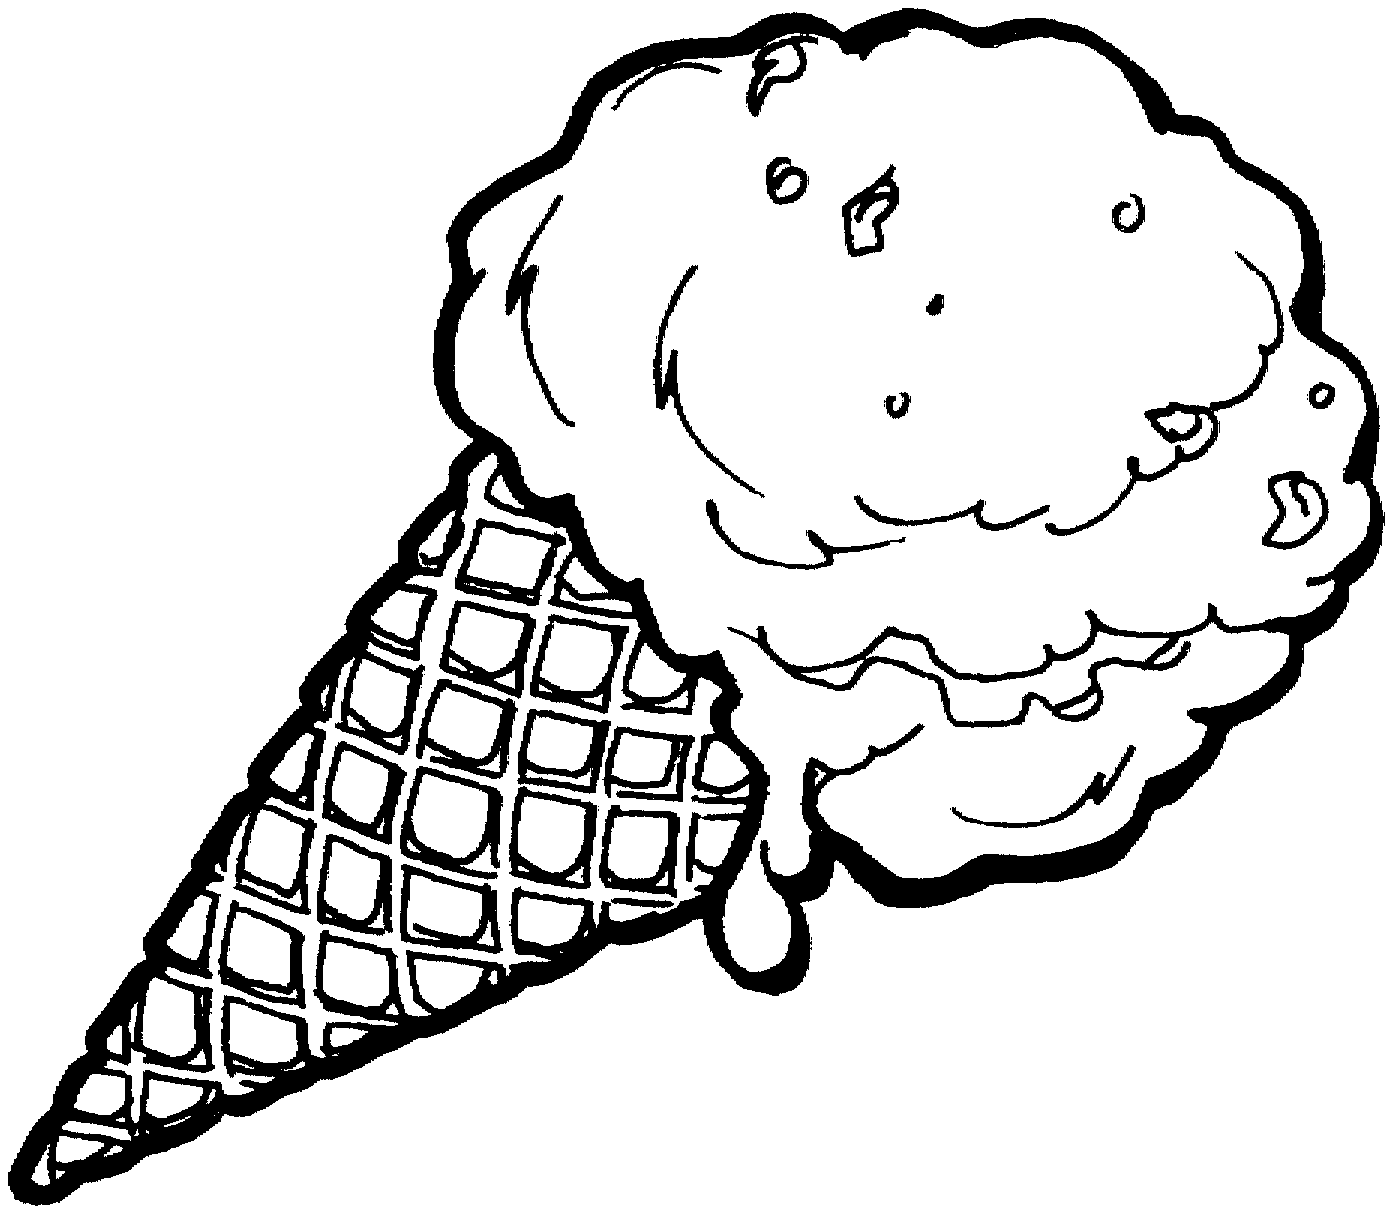 ice cream cone clipart black and white - photo #8